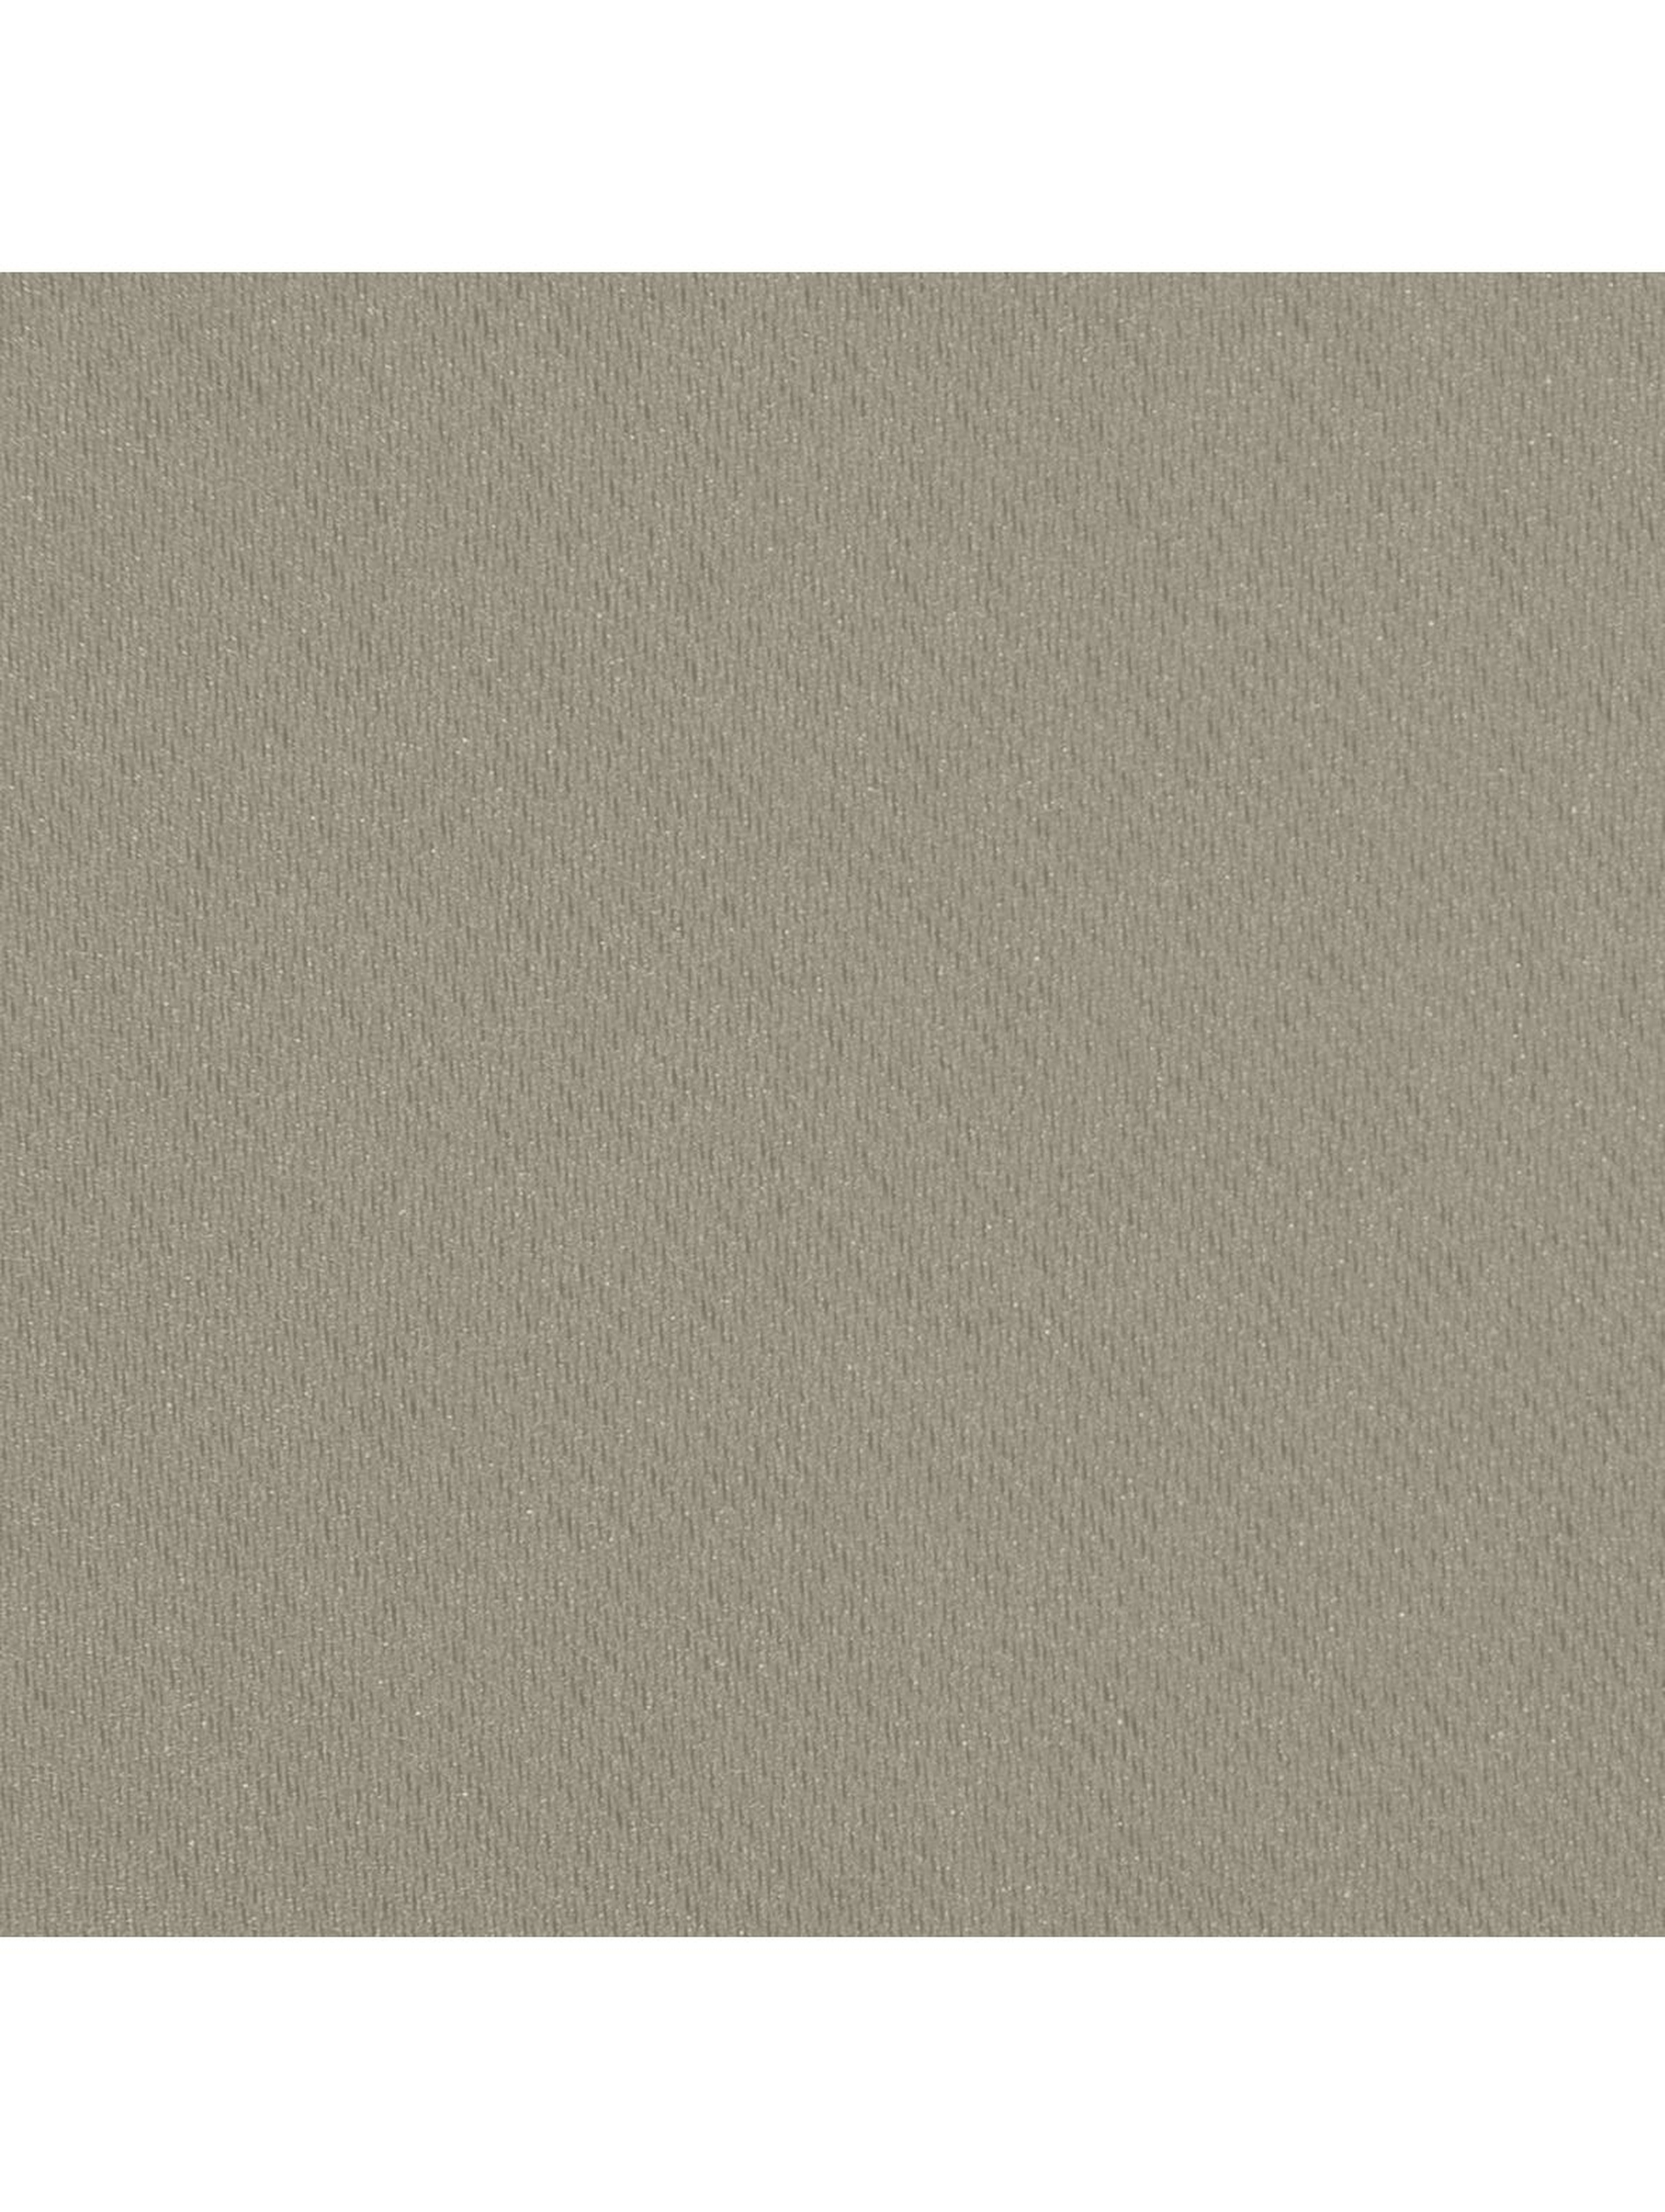 Zasłona jednokolorowa zaciemniająca- brązowa - 135x270cm